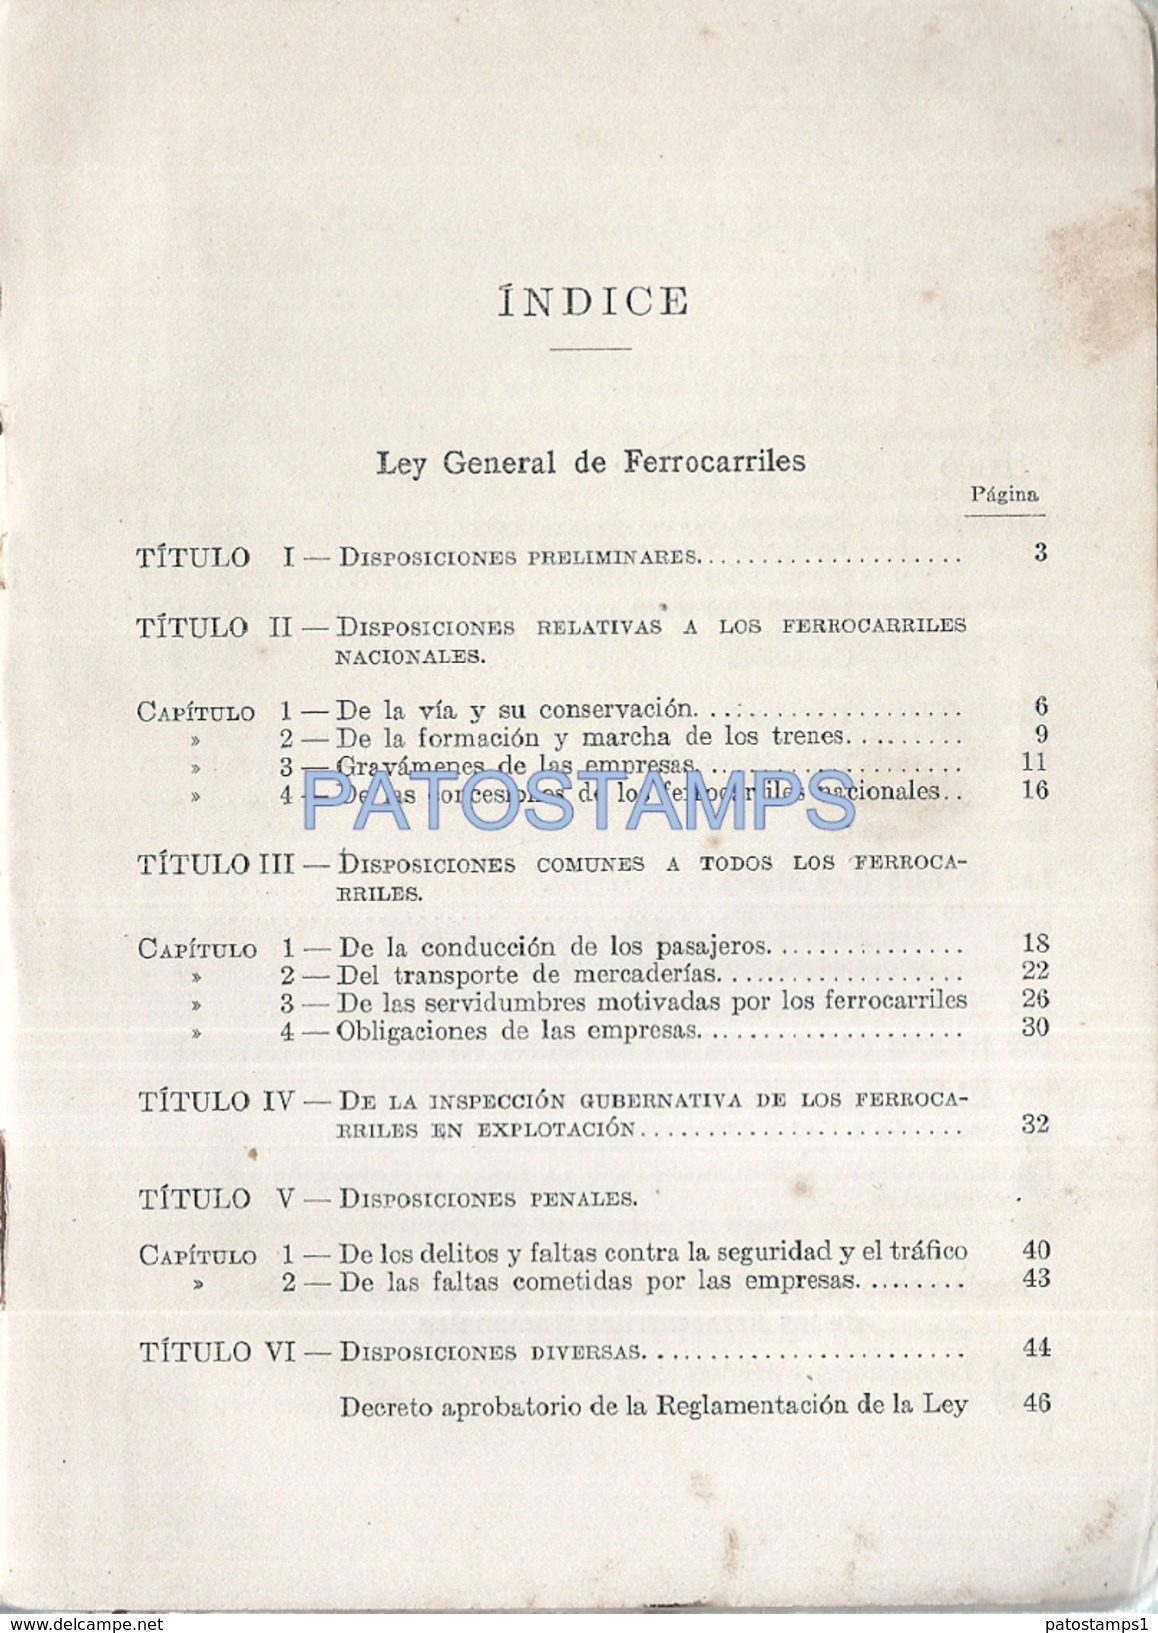 73597 ARGENTINA BS AS LEY Y REGLAMENTO DE LOS FERROCARRILES NACIONALES TREN TRAIN 1932 PAG 406 NO POSTAL POSTCARD - Spoorweg